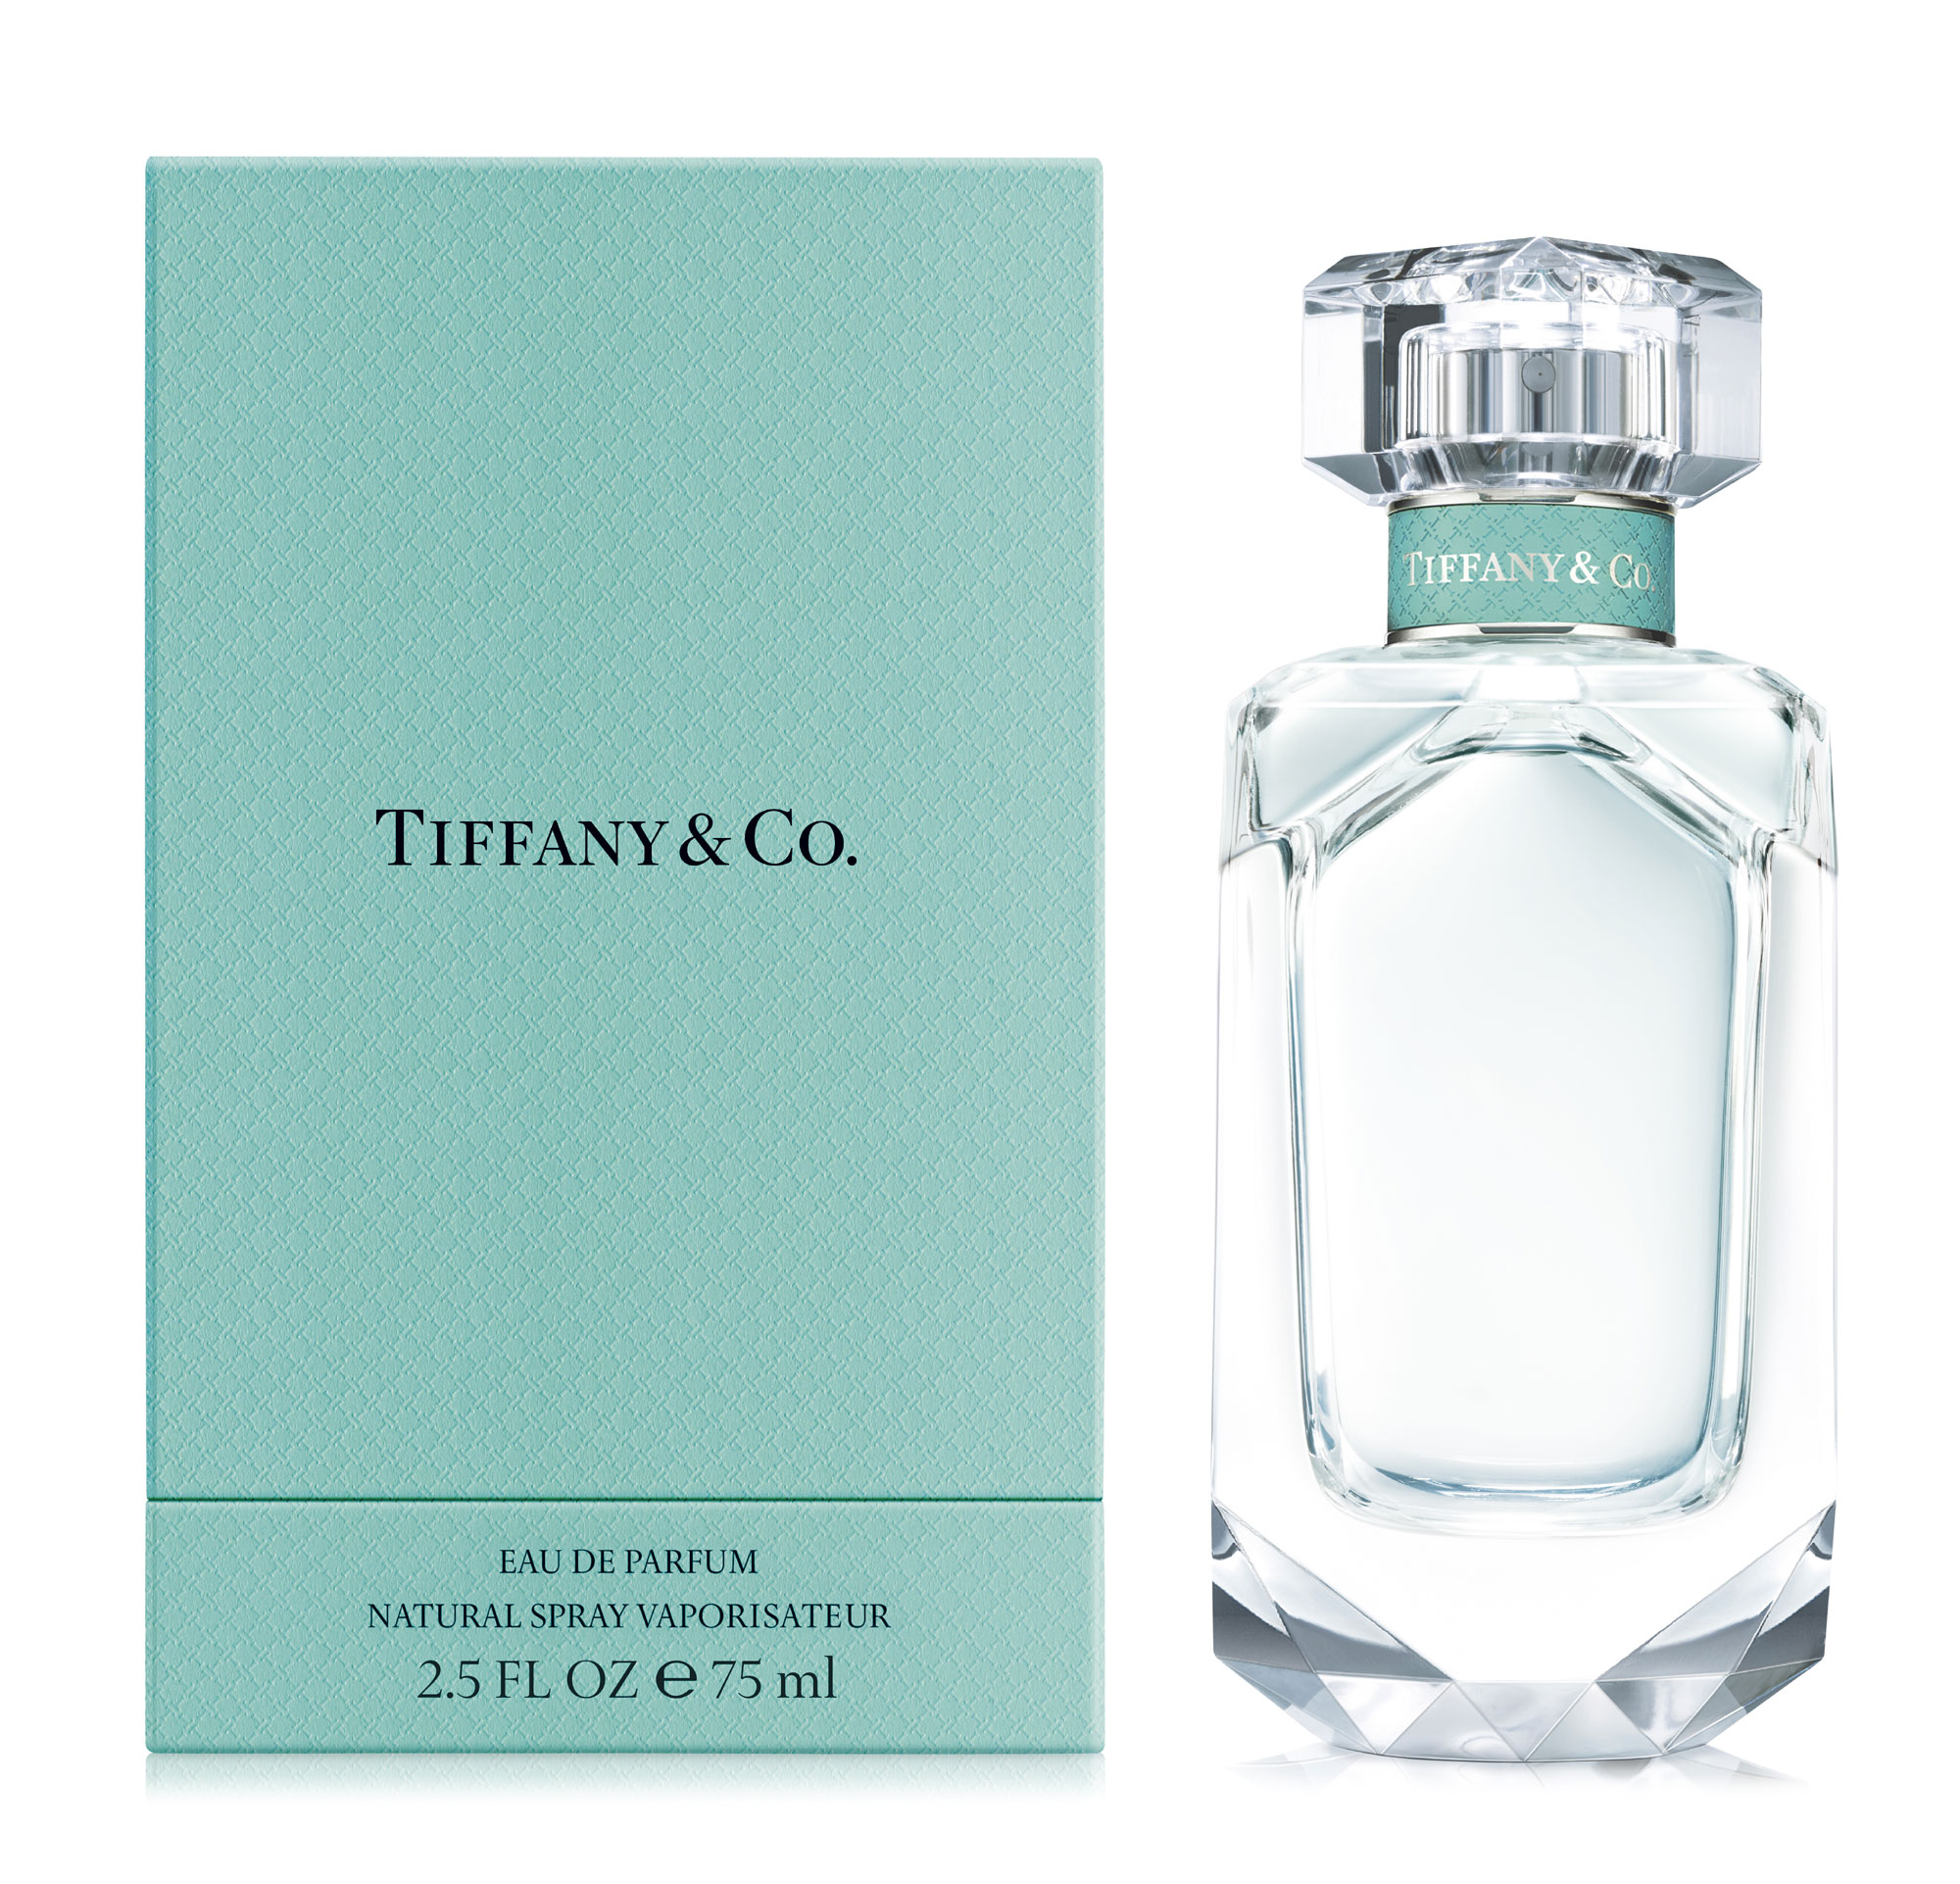 蒂芙尼 钻石同名 Tiffany & Co|香水评论|香调|价格|味道|香评|评价|-香水时代NoseTime.com